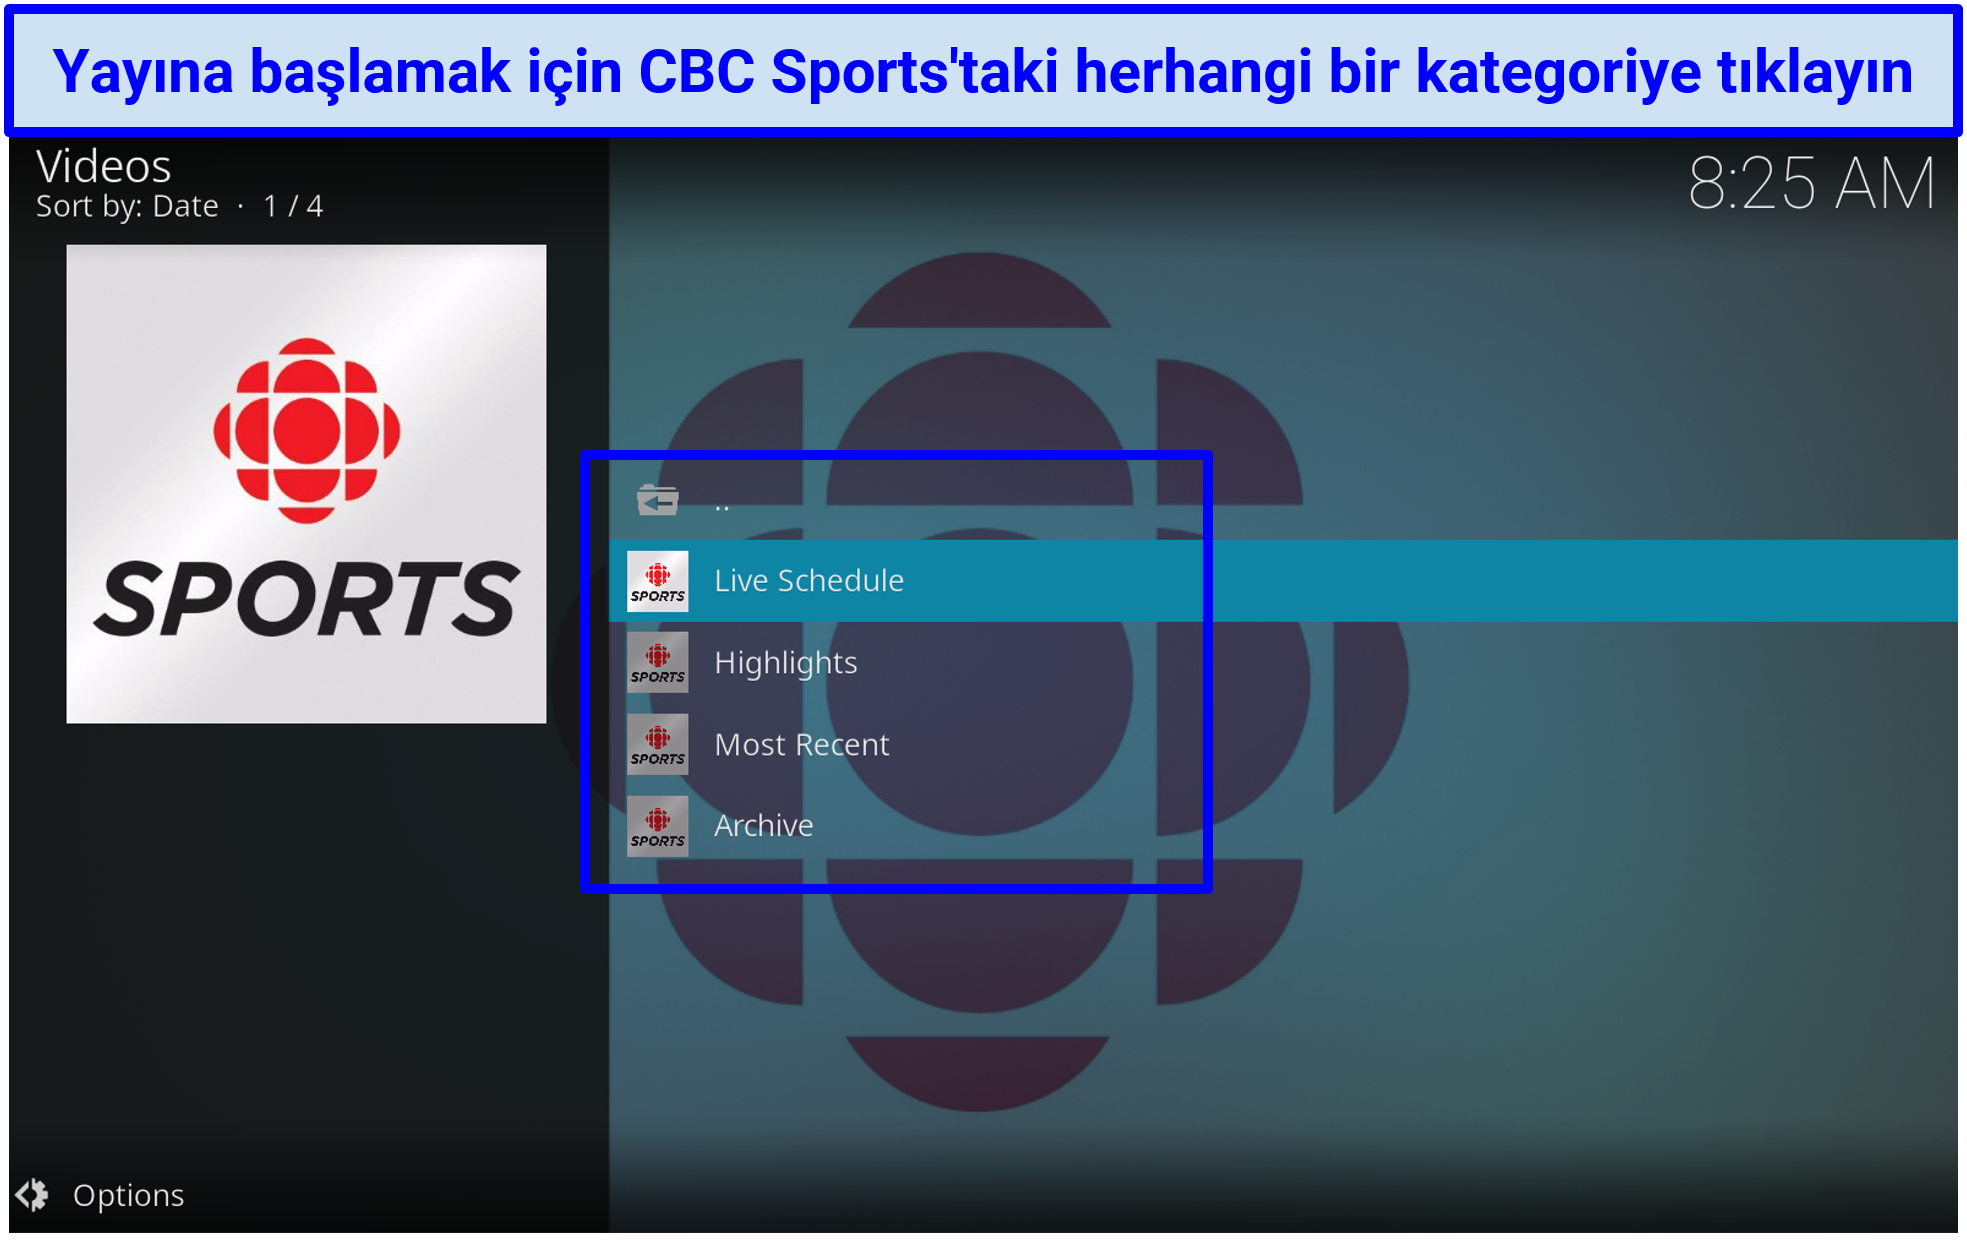 CBC Sports eklentisinin basit bir arayüze sahip olduğunu gösteren ekran görüntüsü